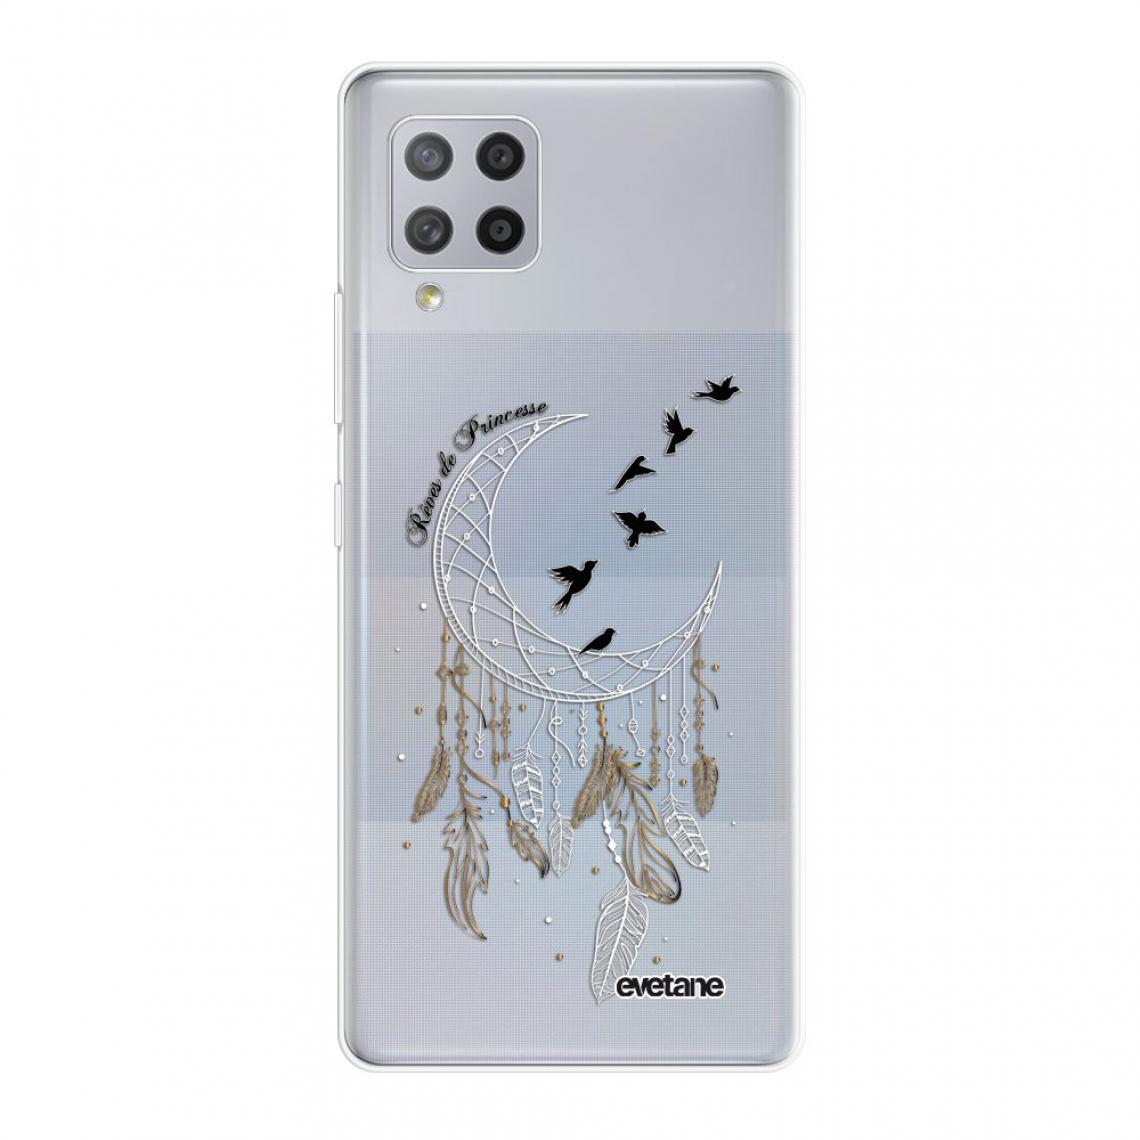 Evetane - Coque Samsung Galaxy A42 souple silicone transparente - Coque, étui smartphone